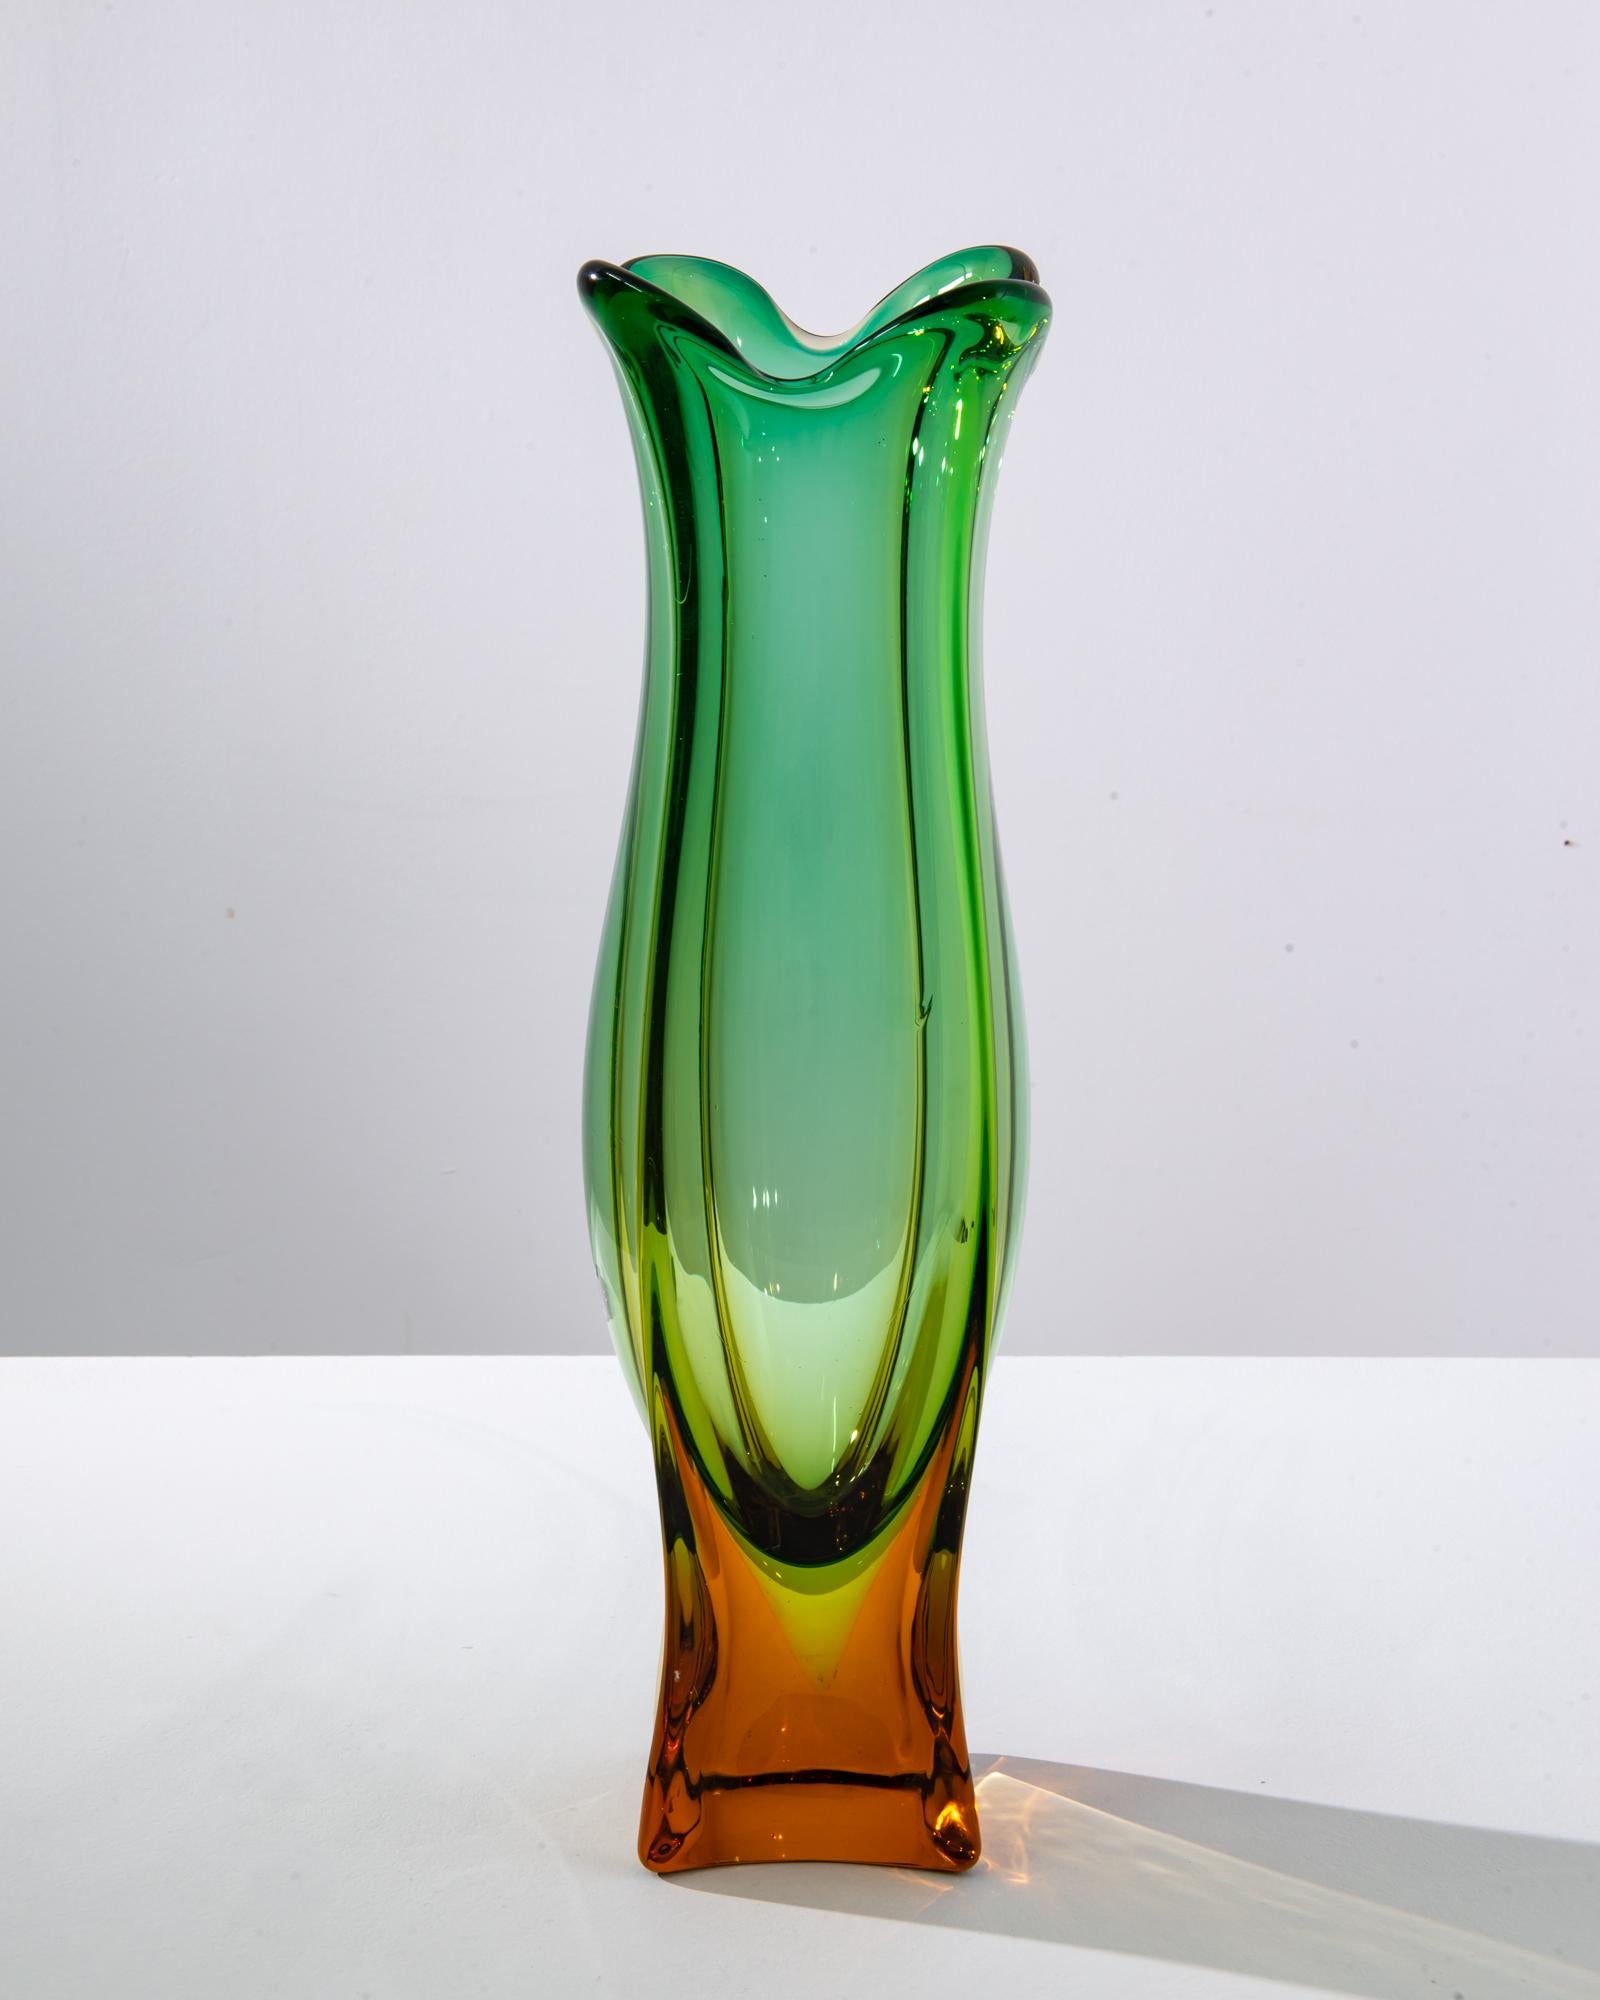 Vase en verre fabriqué dans l'Italie des années 1960. Ce vase éblouissant a été fabriqué par Murano Glass, un fabricant renommé de Vénétie, une région célèbre pour ses milliers d'années de soufflage artisanal du verre. Les teintes jaune orangé